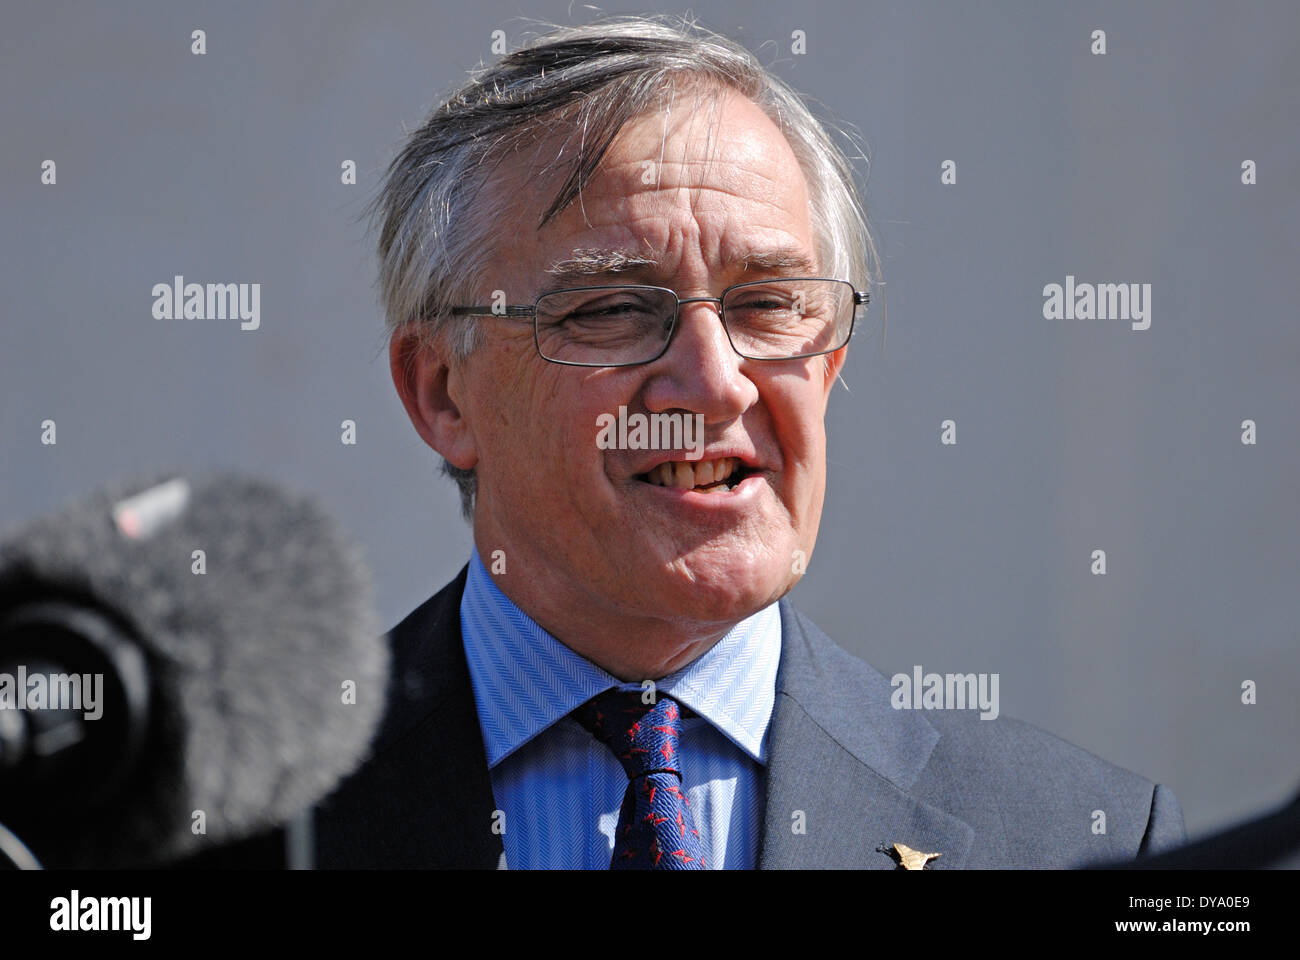 Sir Gerald Howarth MP (konservativ; Aldershot) interviewt außerhalb des Parlaments Stockfoto